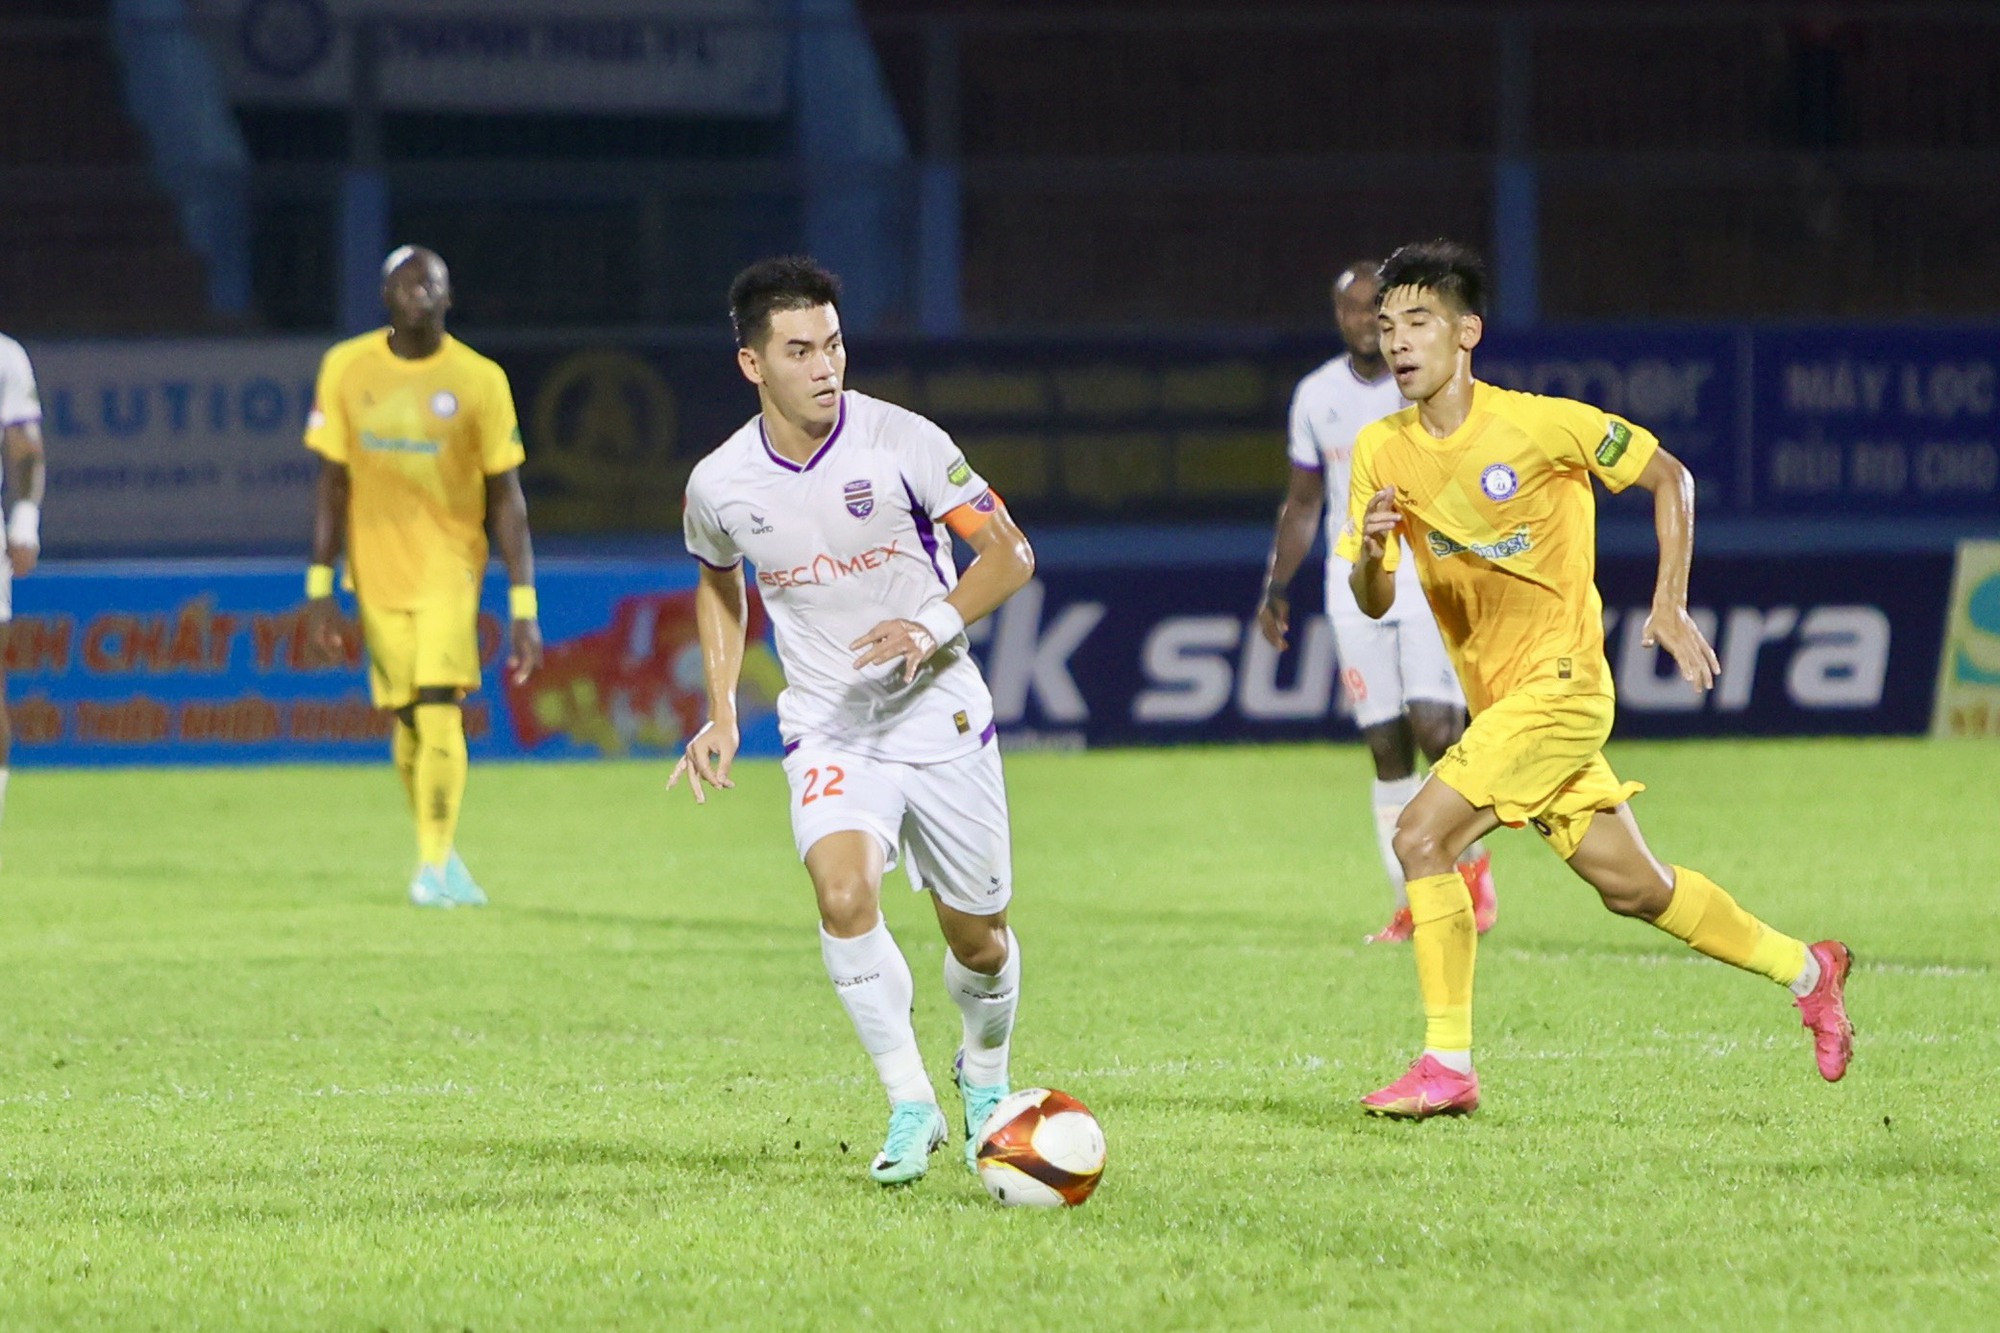 HLV Lê Huỳnh Đức trước cơ hội trở thành 'người mở đường' ở V-League - Ảnh 2.